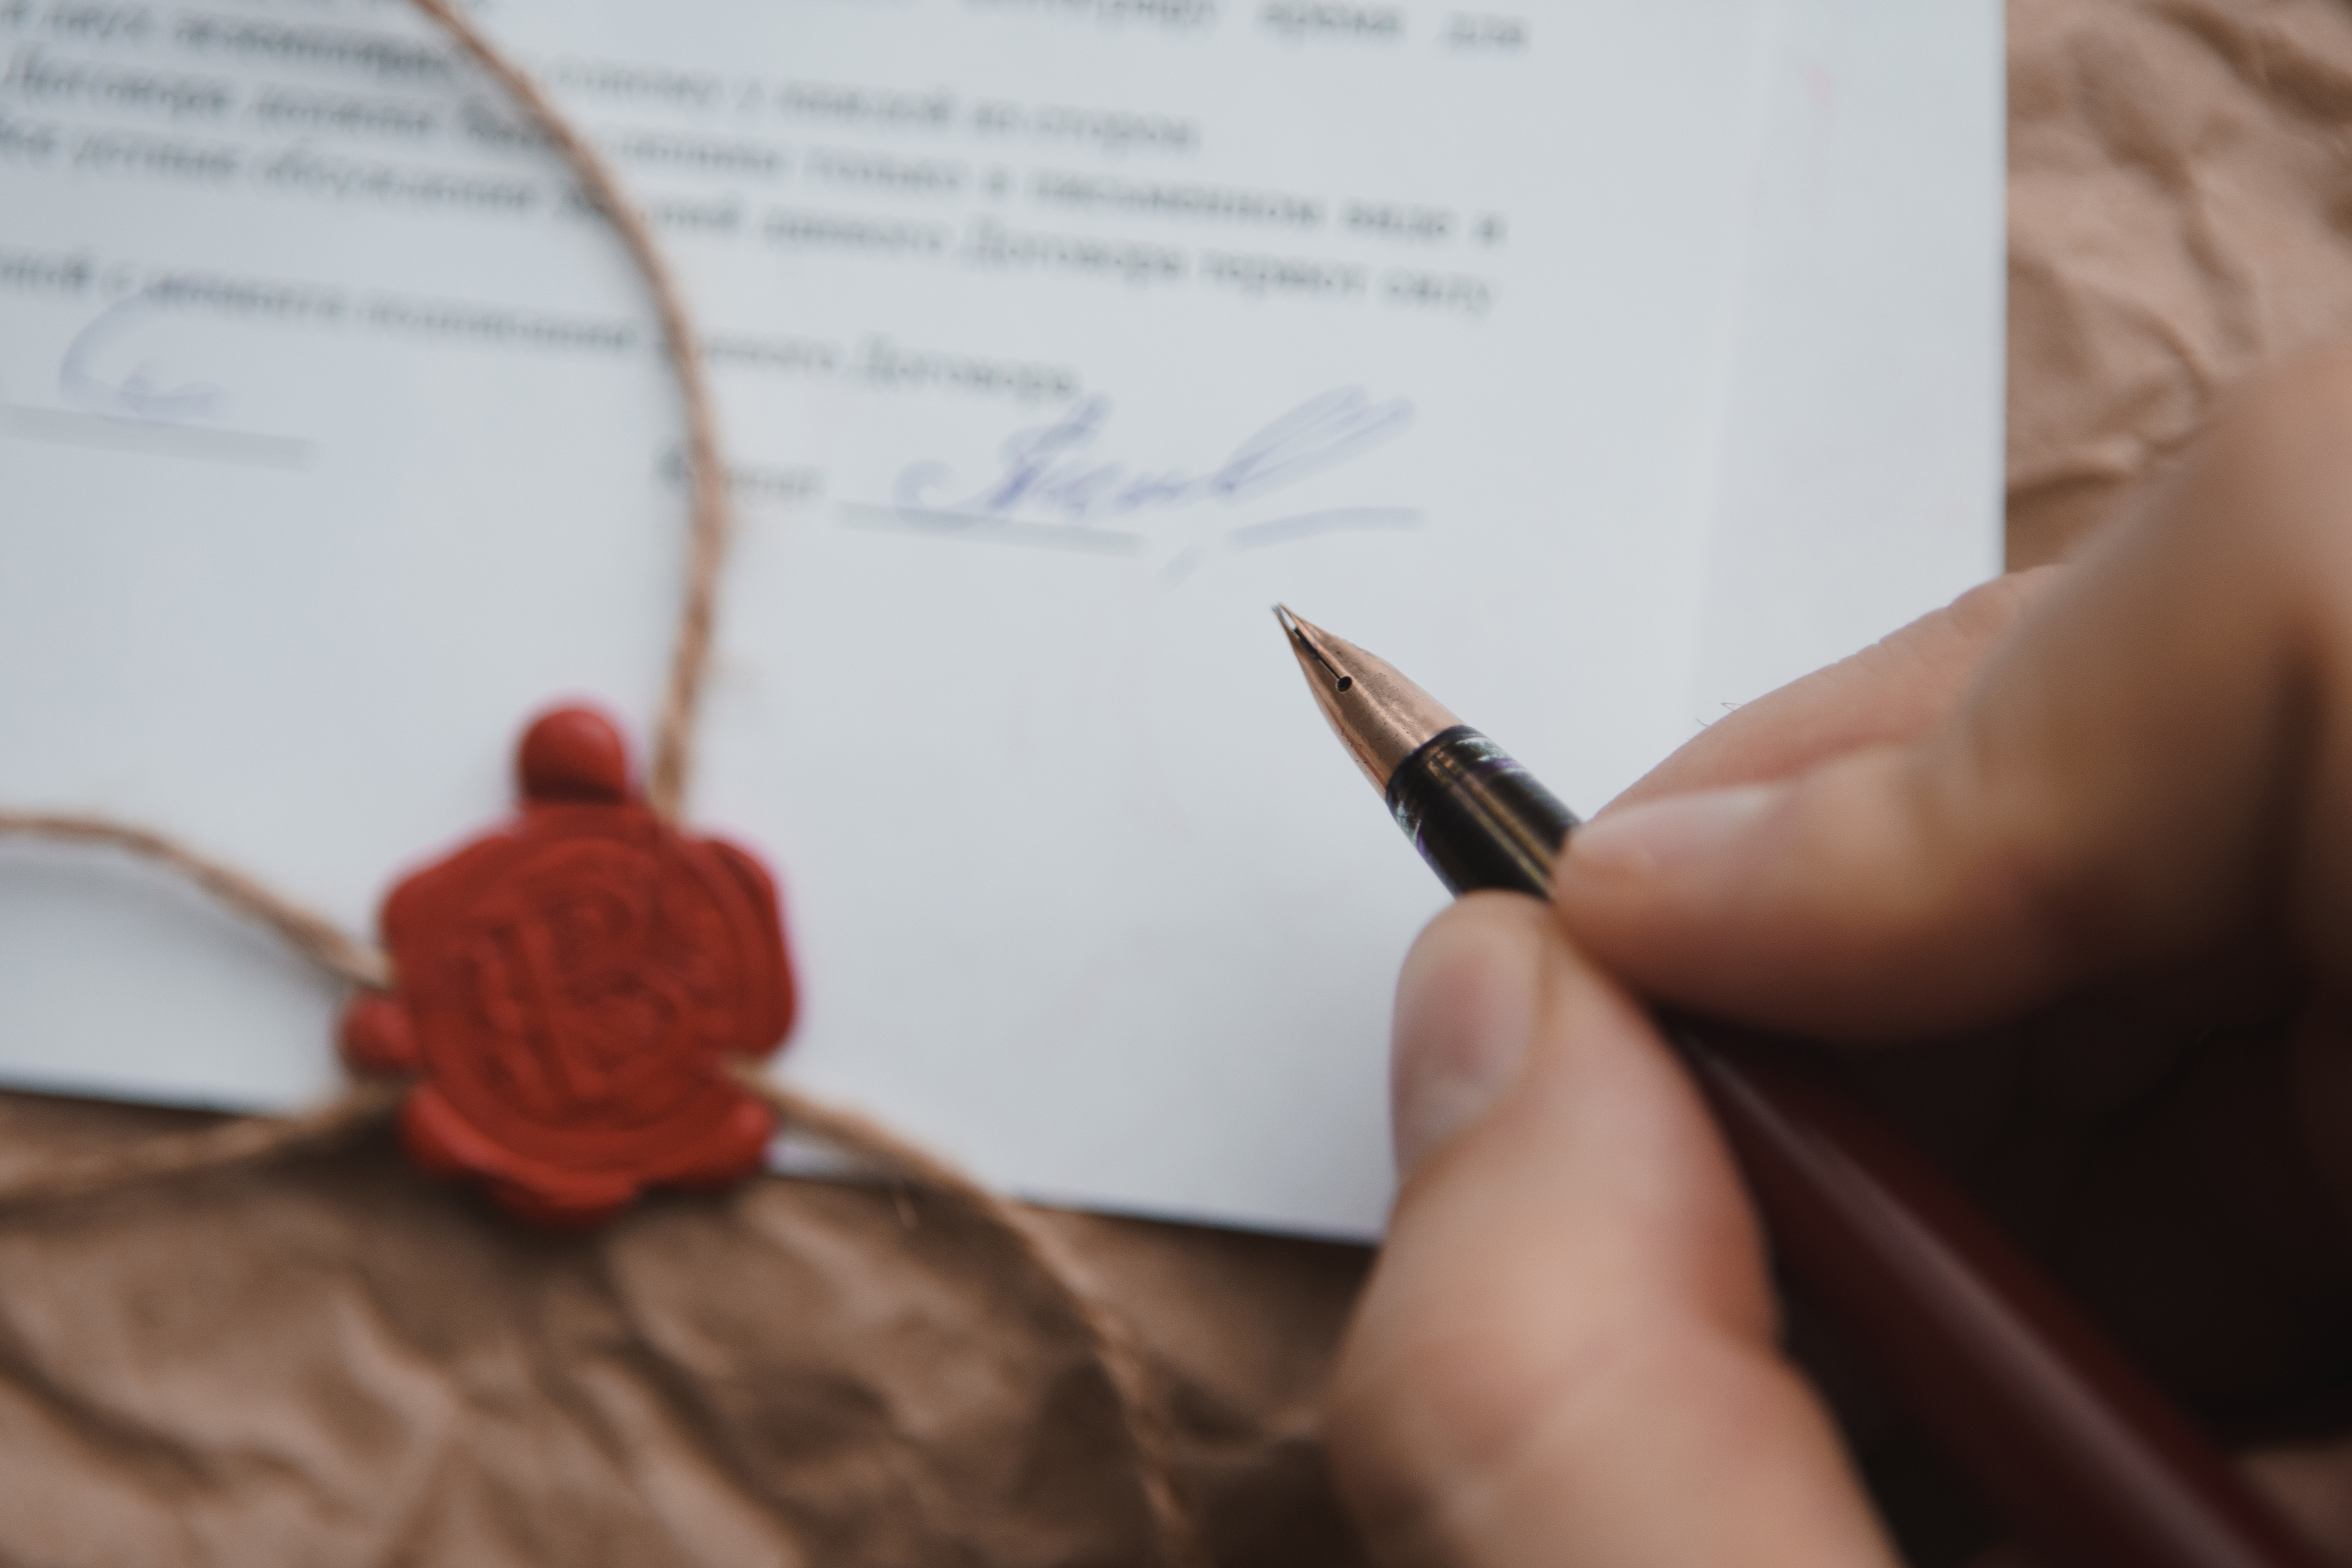 Eine Person unterschreibt ein Dokument | Quelle: Shutterstock